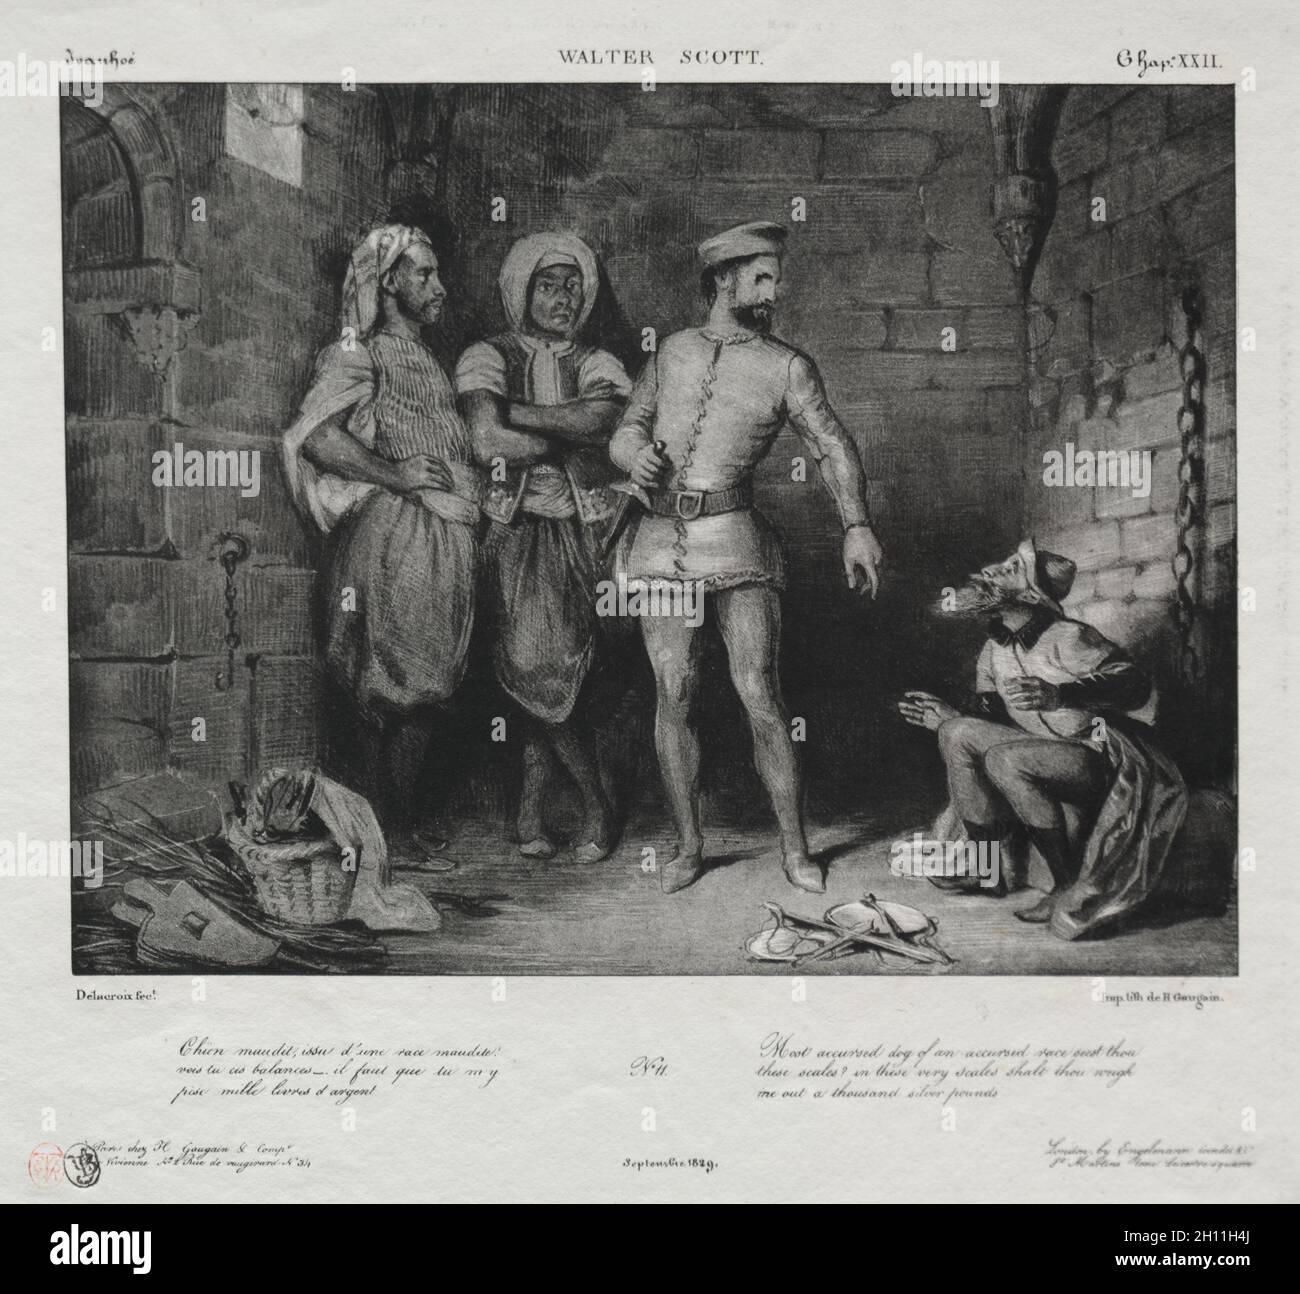 Fronte-boeuf et le juif, 1829.Eugène Delacroix (français, 1798-1863).Lithographie; feuille: 25.4 x 27.8 cm (10 x 10 15/16 po.); image: 16.6 x 21.7 cm (6 9/16 x 8 9/16 po.). Banque D'Images